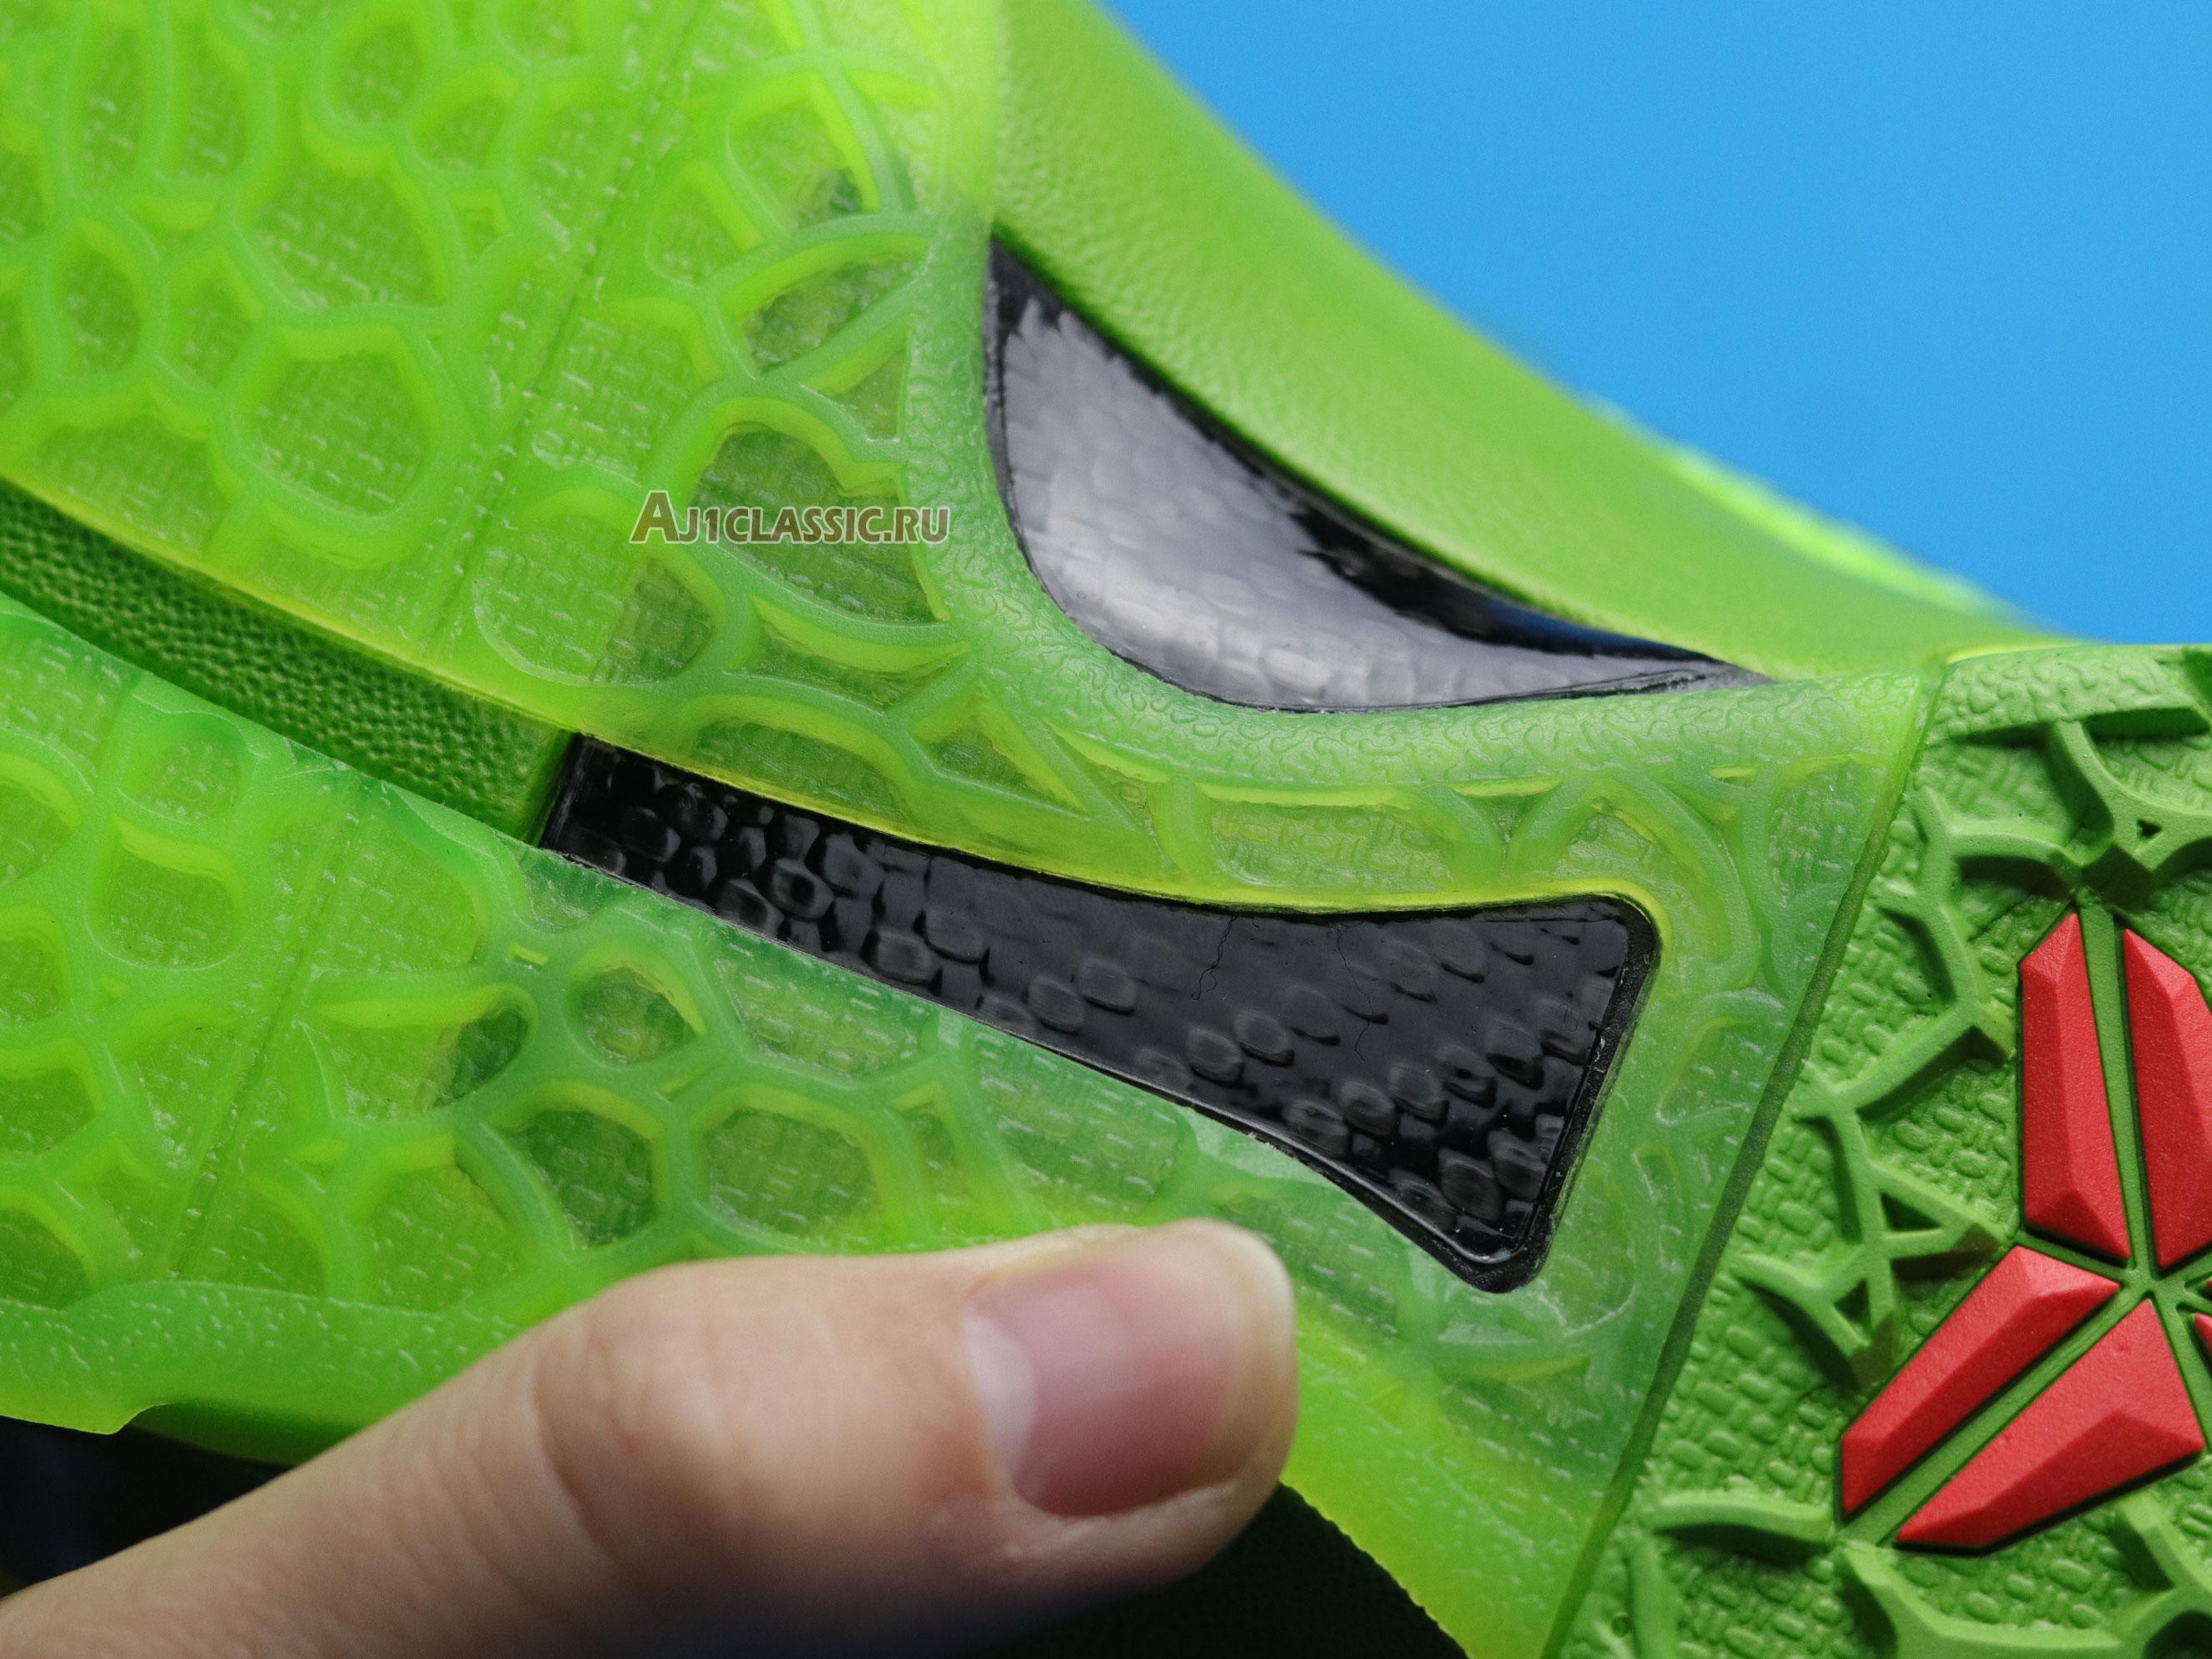 Nike Zoom Kobe 6 Protro "Grinch" CW2190-300